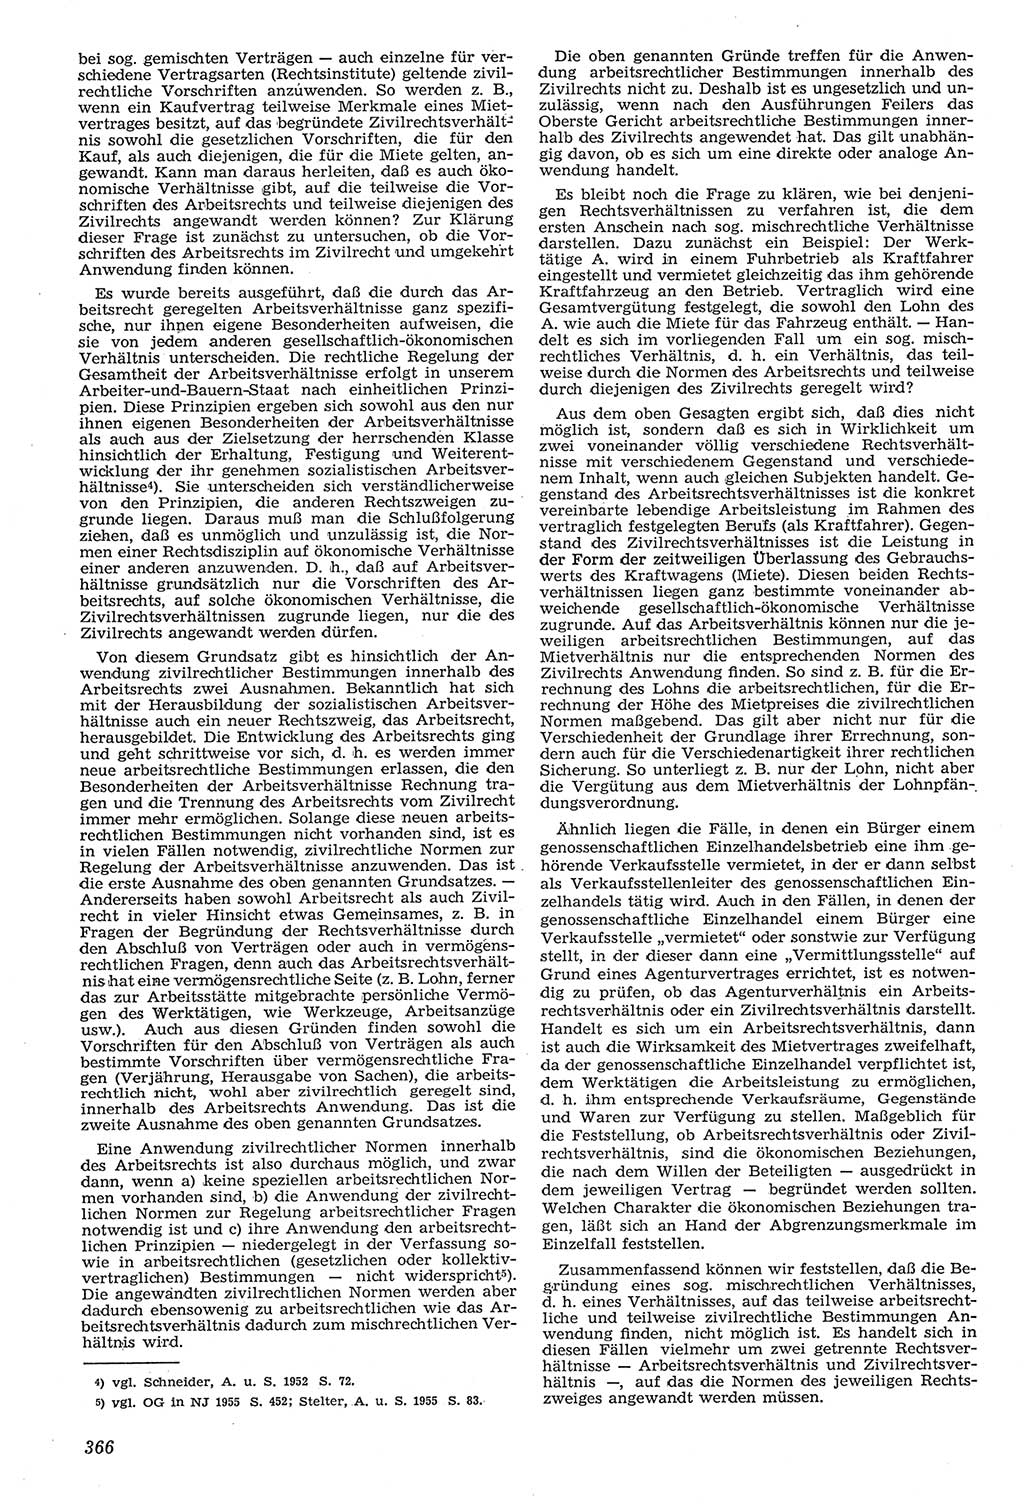 Neue Justiz (NJ), Zeitschrift für Recht und Rechtswissenschaft [Deutsche Demokratische Republik (DDR)], 11. Jahrgang 1957, Seite 366 (NJ DDR 1957, S. 366)